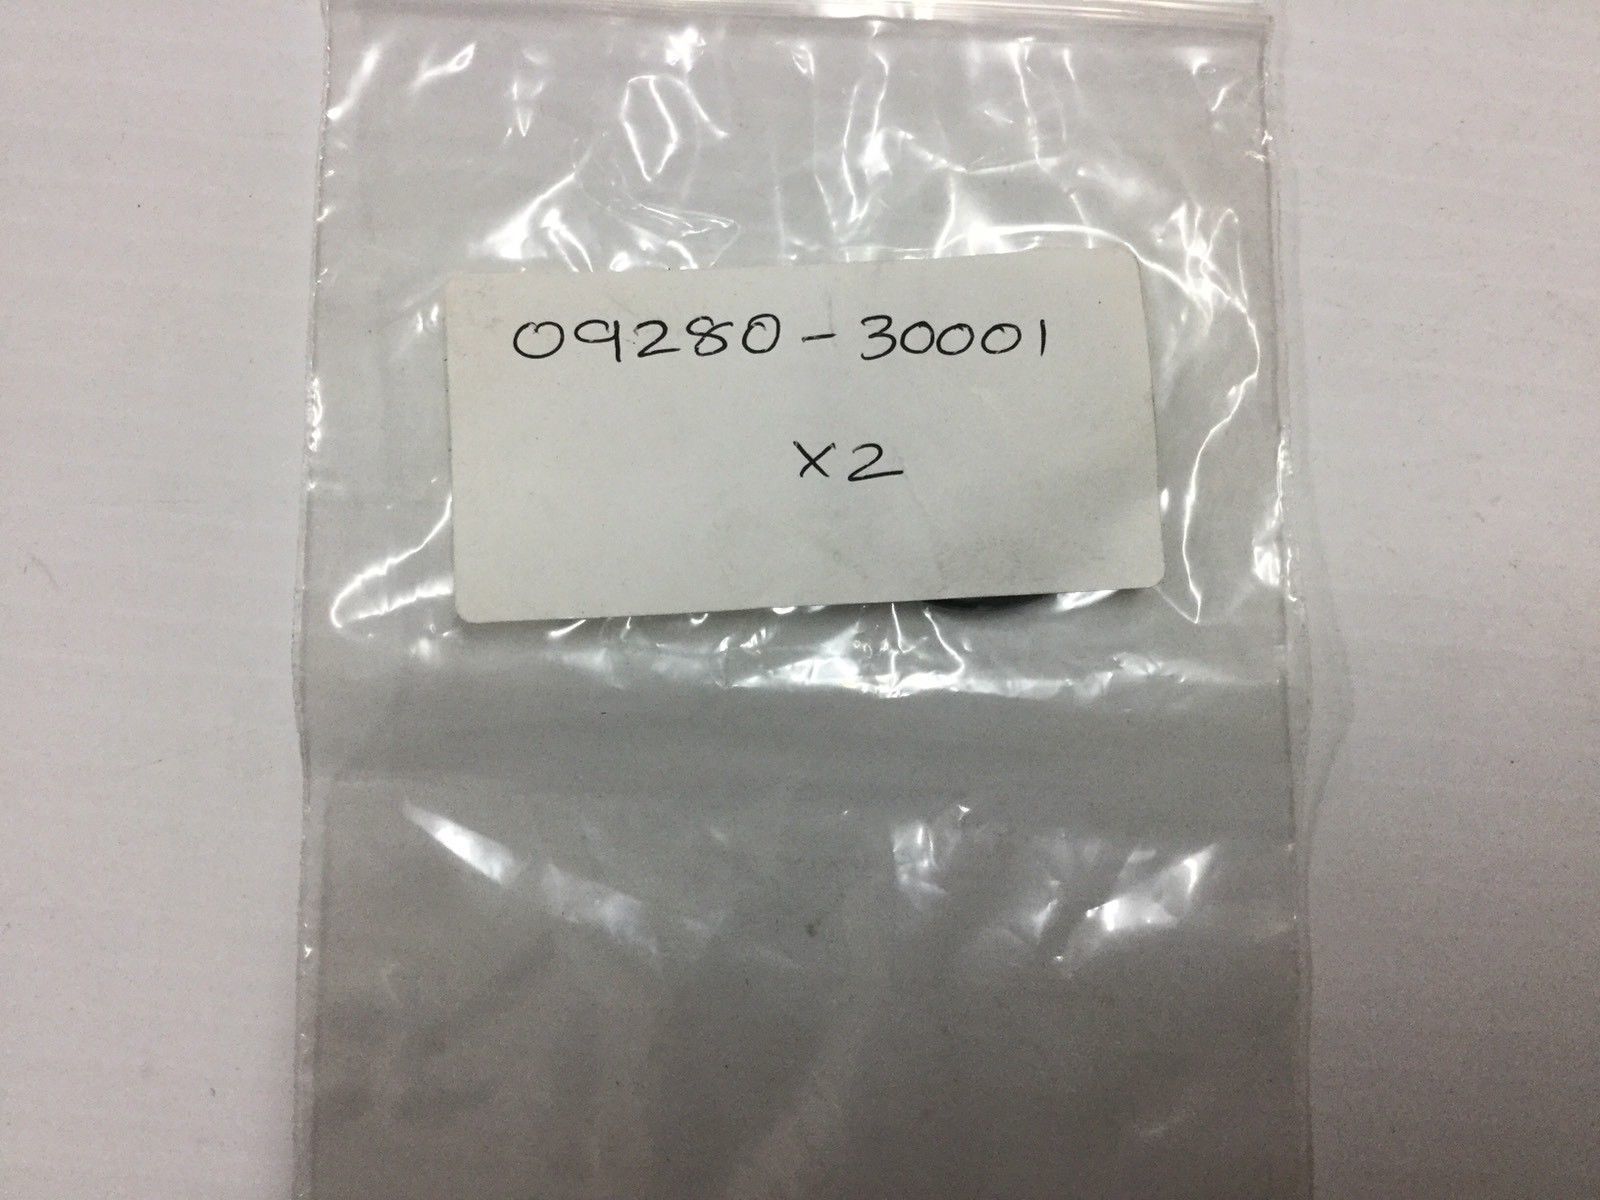 Valve Inspection Cap O-ring Pair Suzuki #09280-30001